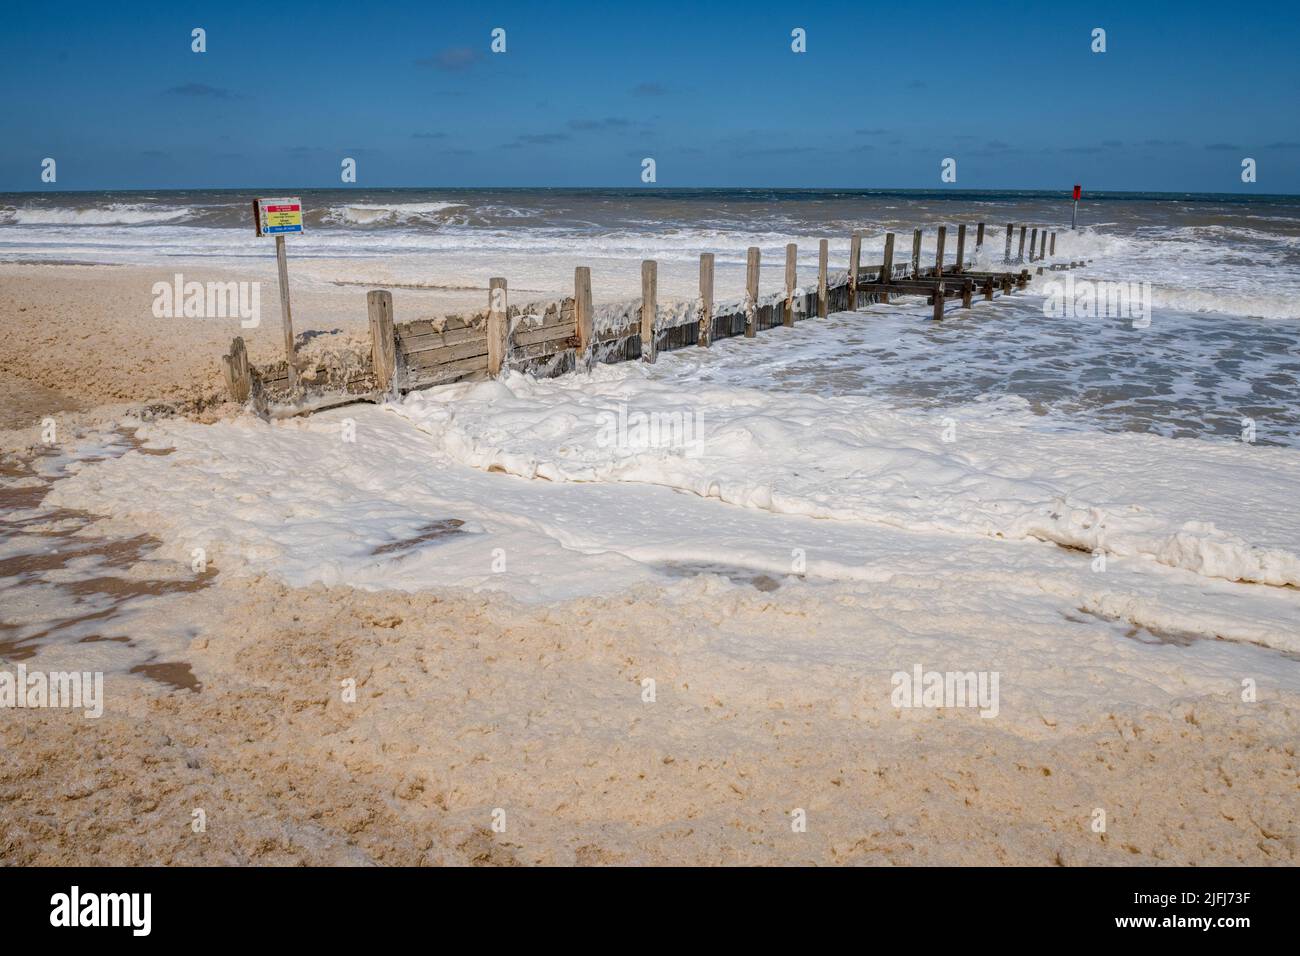 Schiuma di mare, schiuma di mare, schiuma di spiaggia, o spume è un tipo di schiuma creata dall'agitazione di acqua di mare, sulla spiaggia a Horsey, Norfolk, Inghilterra. Foto Stock